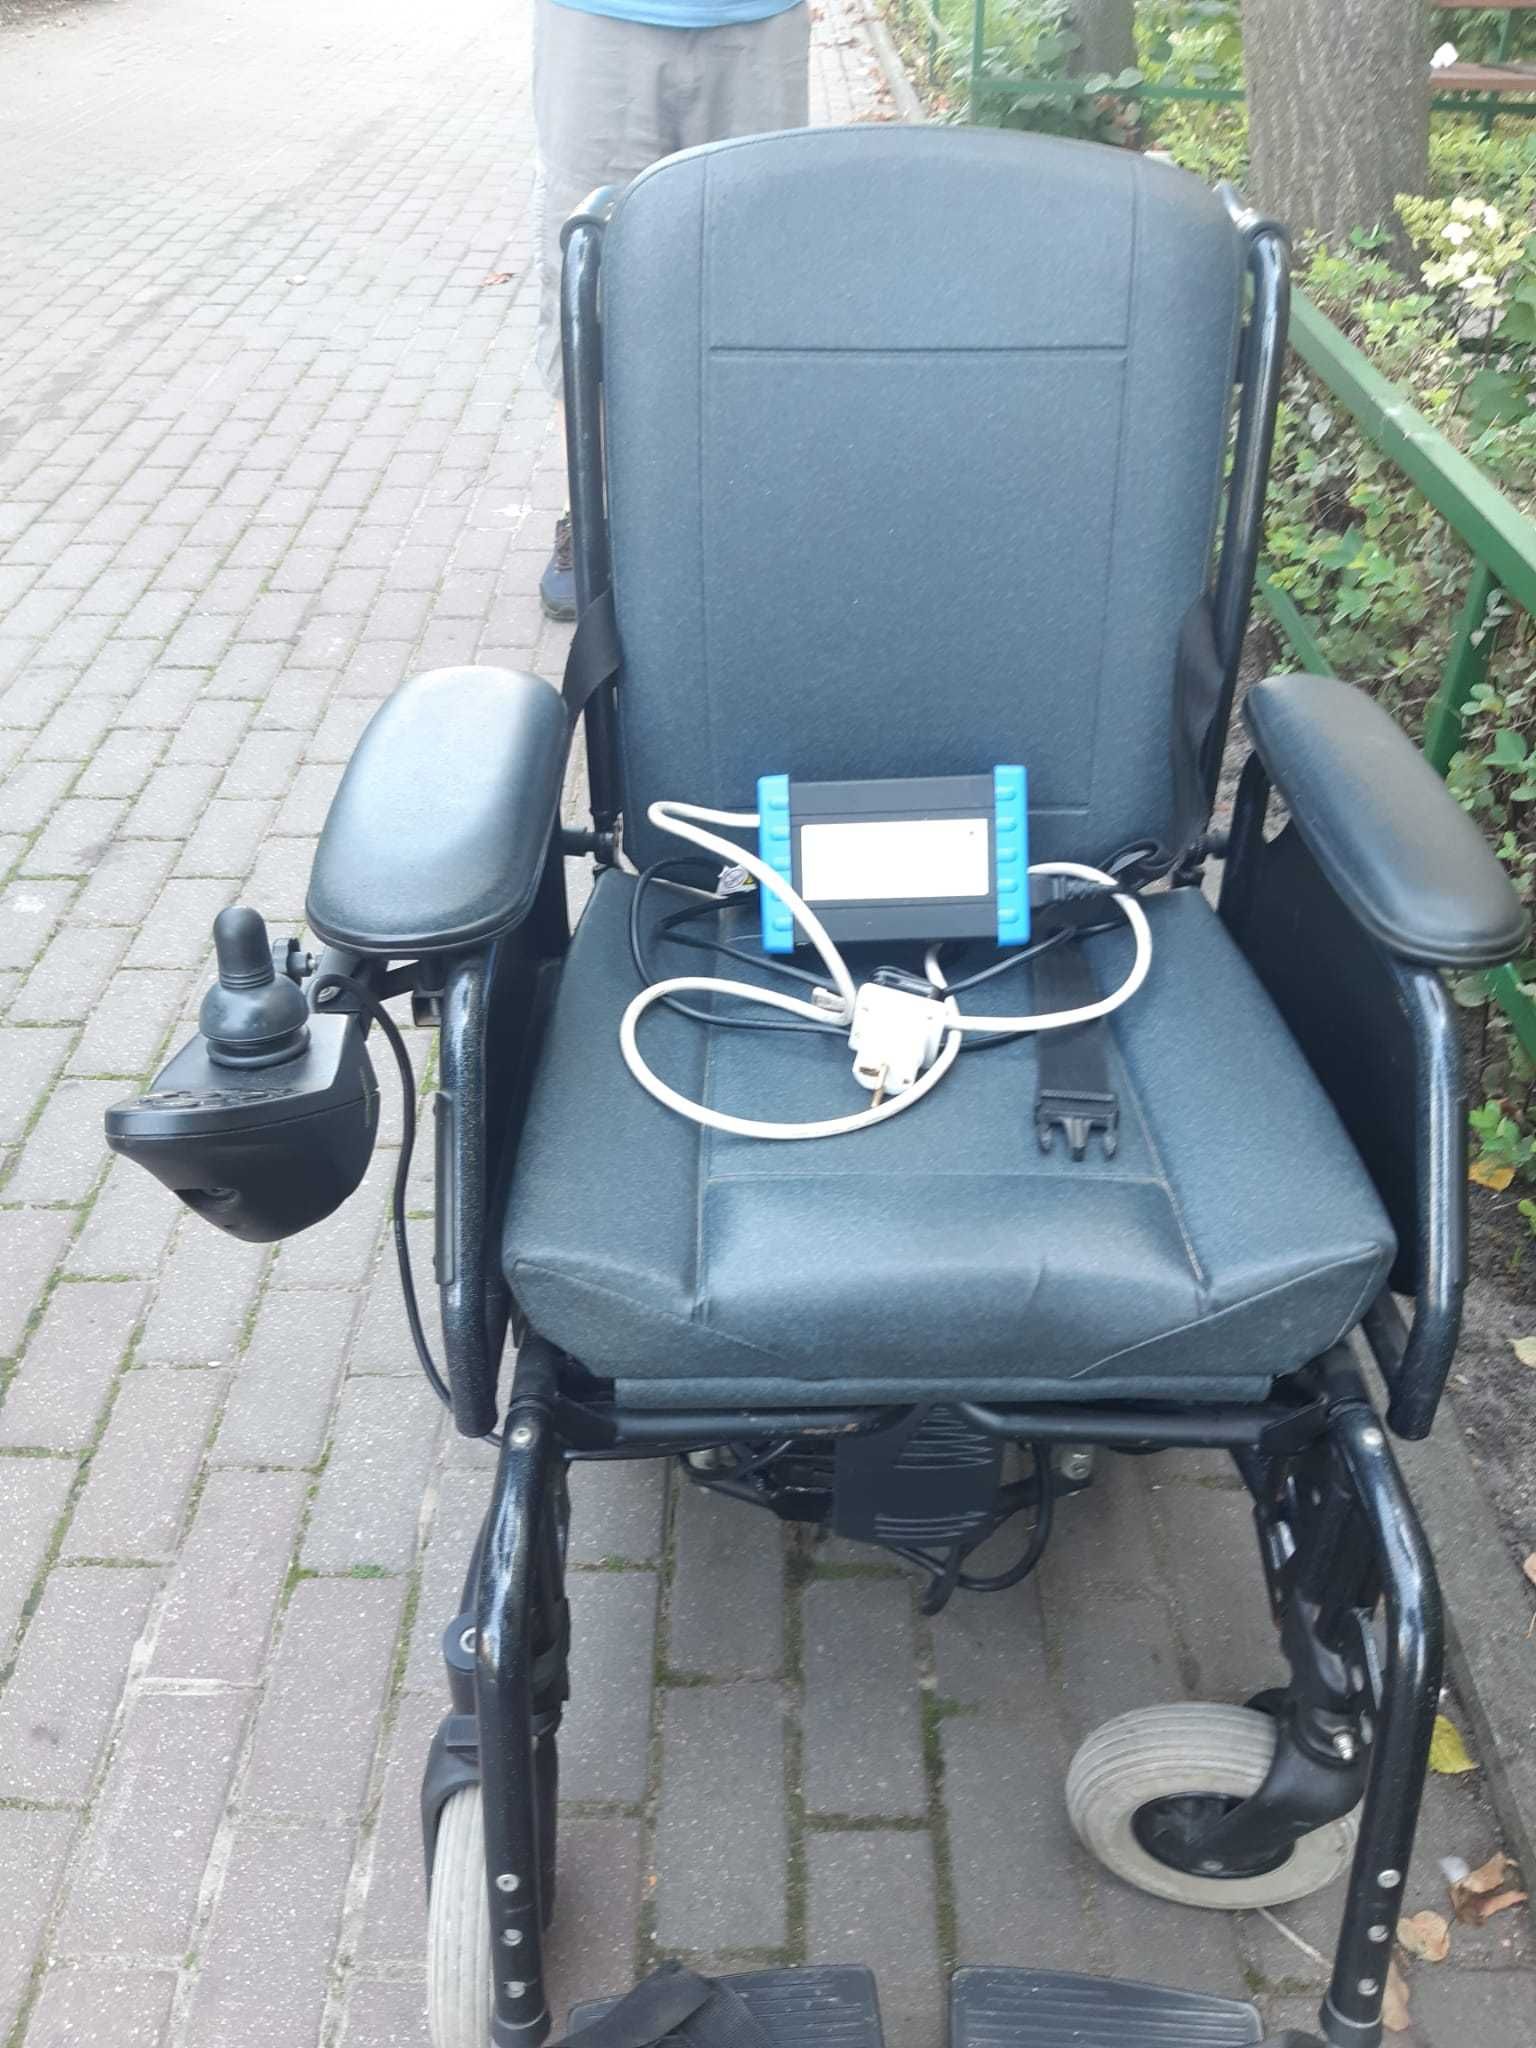 Sprzedam wózek inwalidzki stan b. dobry, mało używany, sprawny